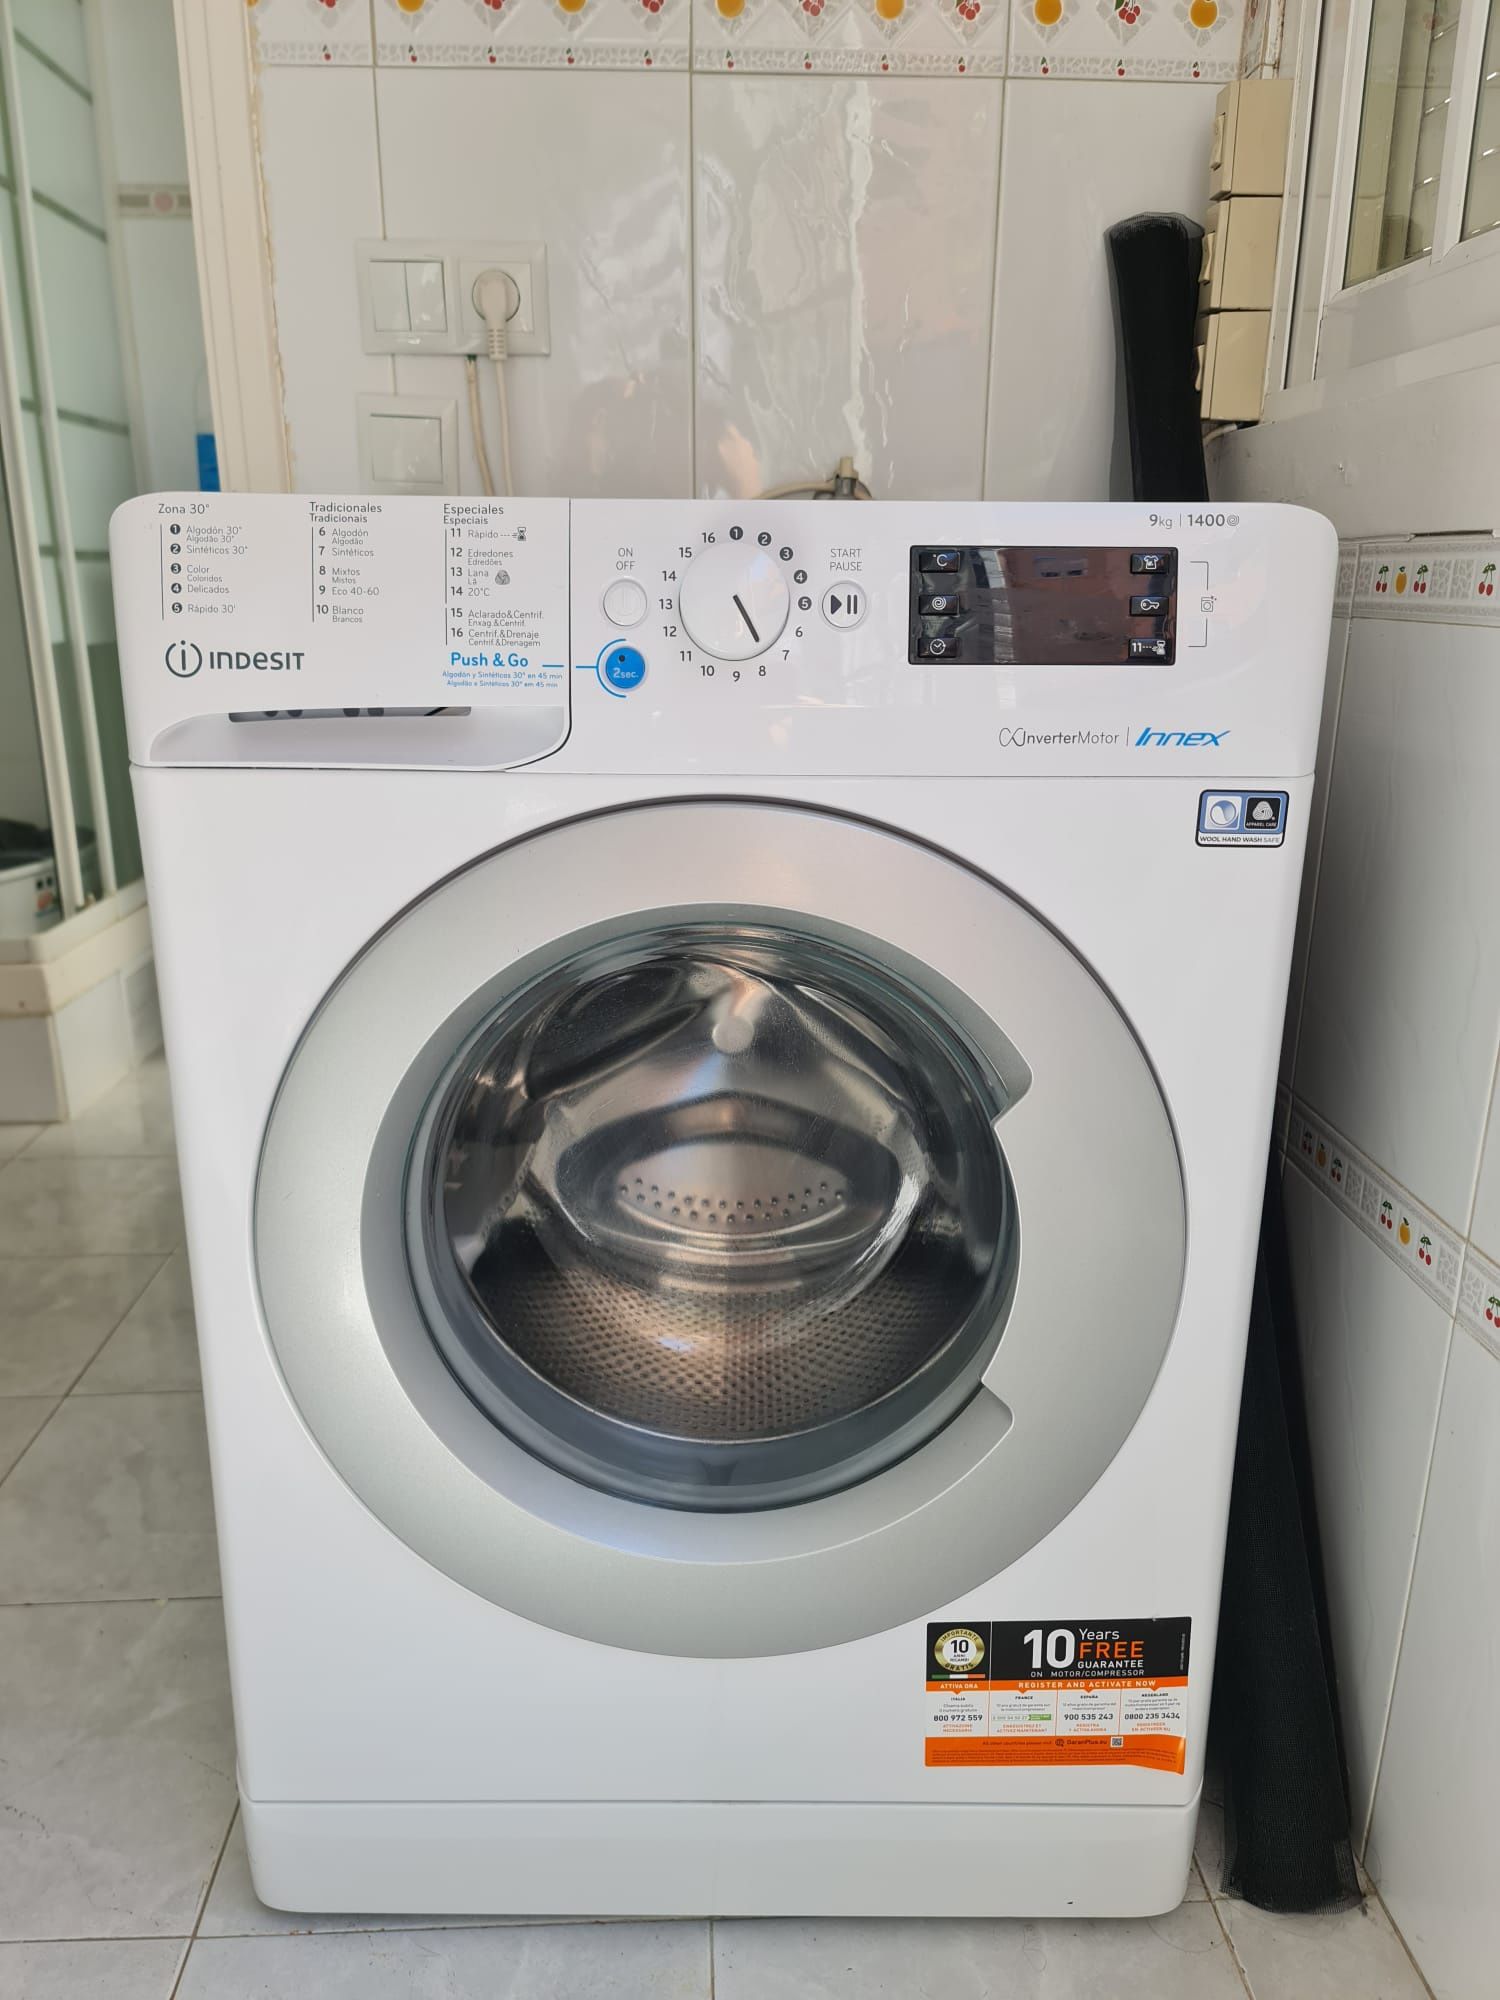 Máquina de lavar roupa - Indesit 9kg